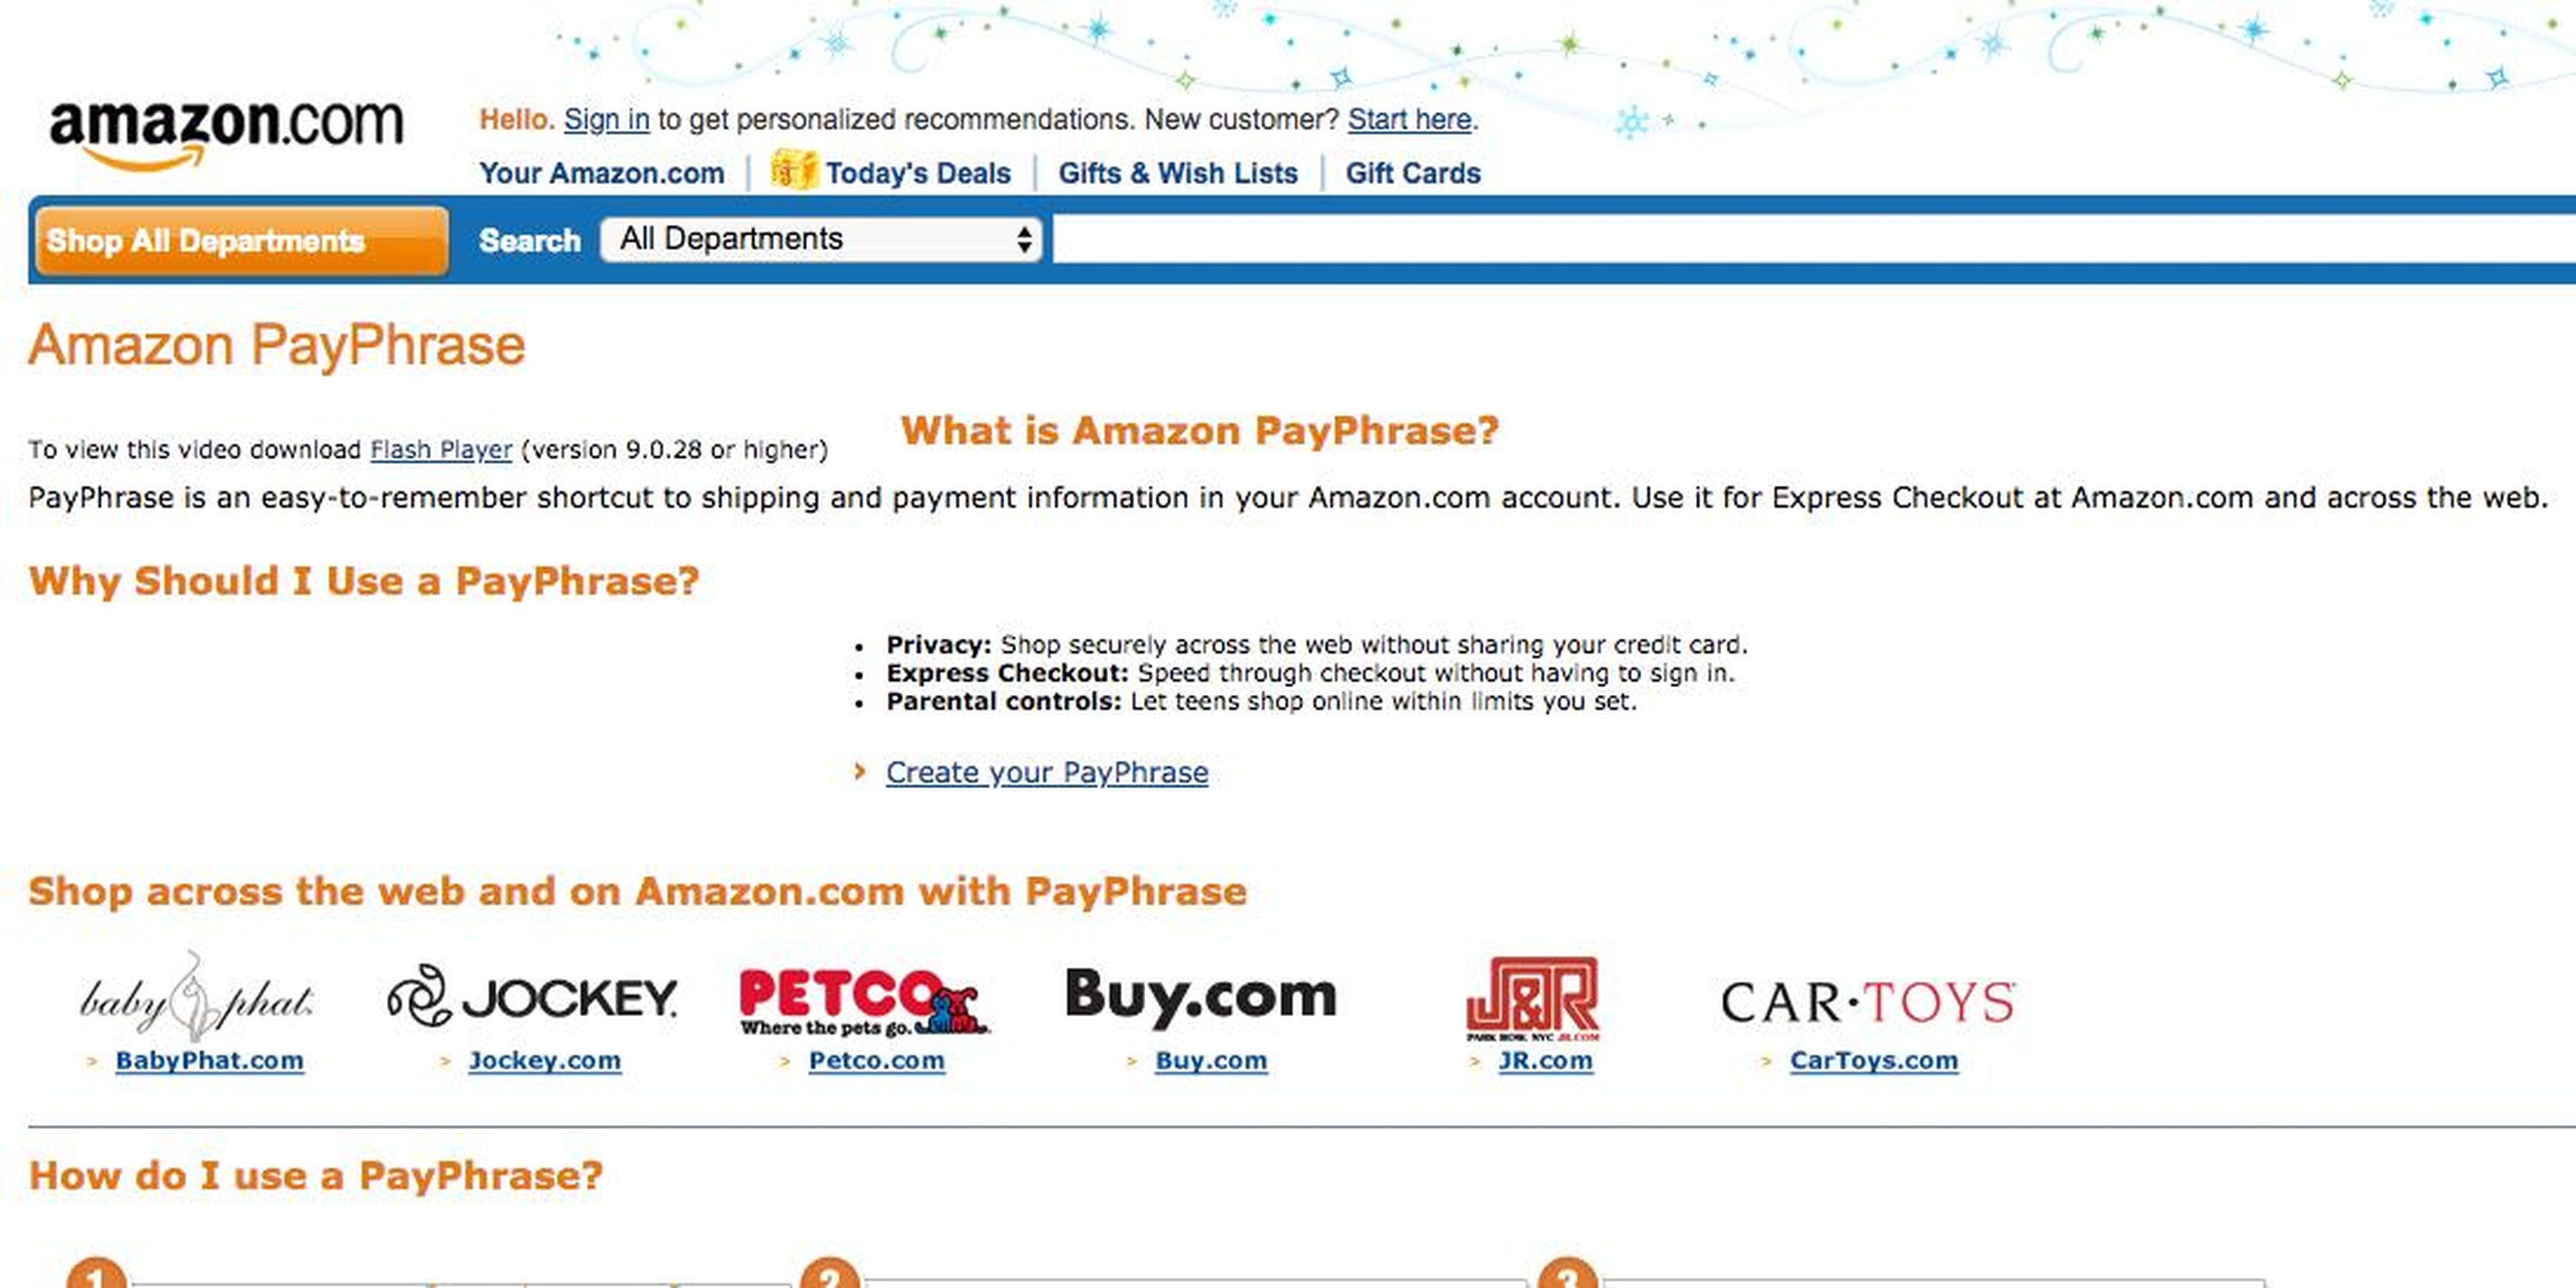 Amazon PayPhrase